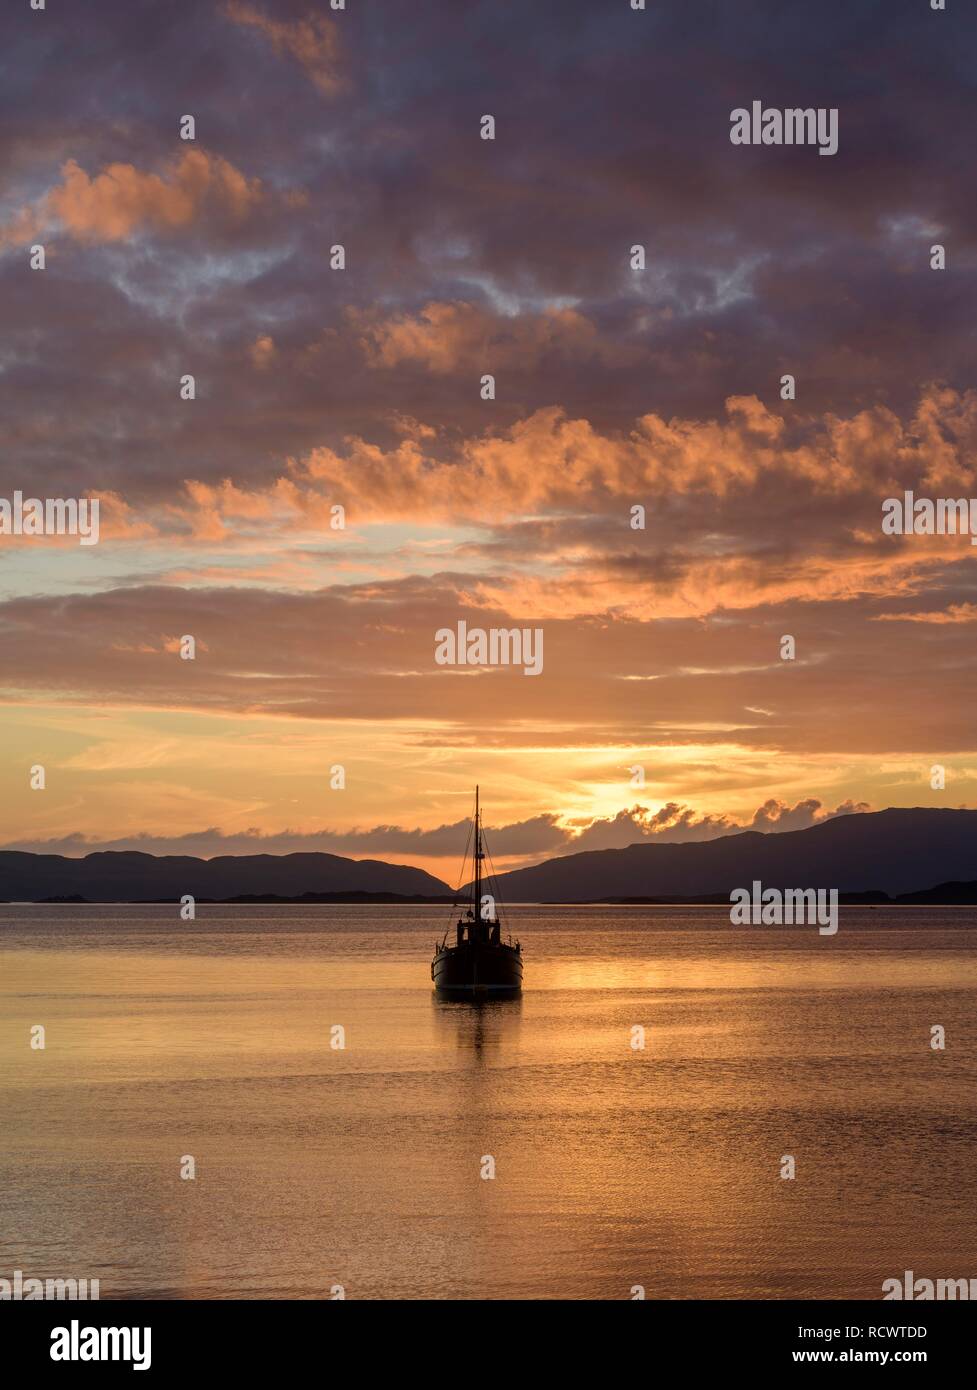 Coucher de soleil sur la mer et bateau en bois, Crinan, Ecosse, Grande-Bretagne Banque D'Images